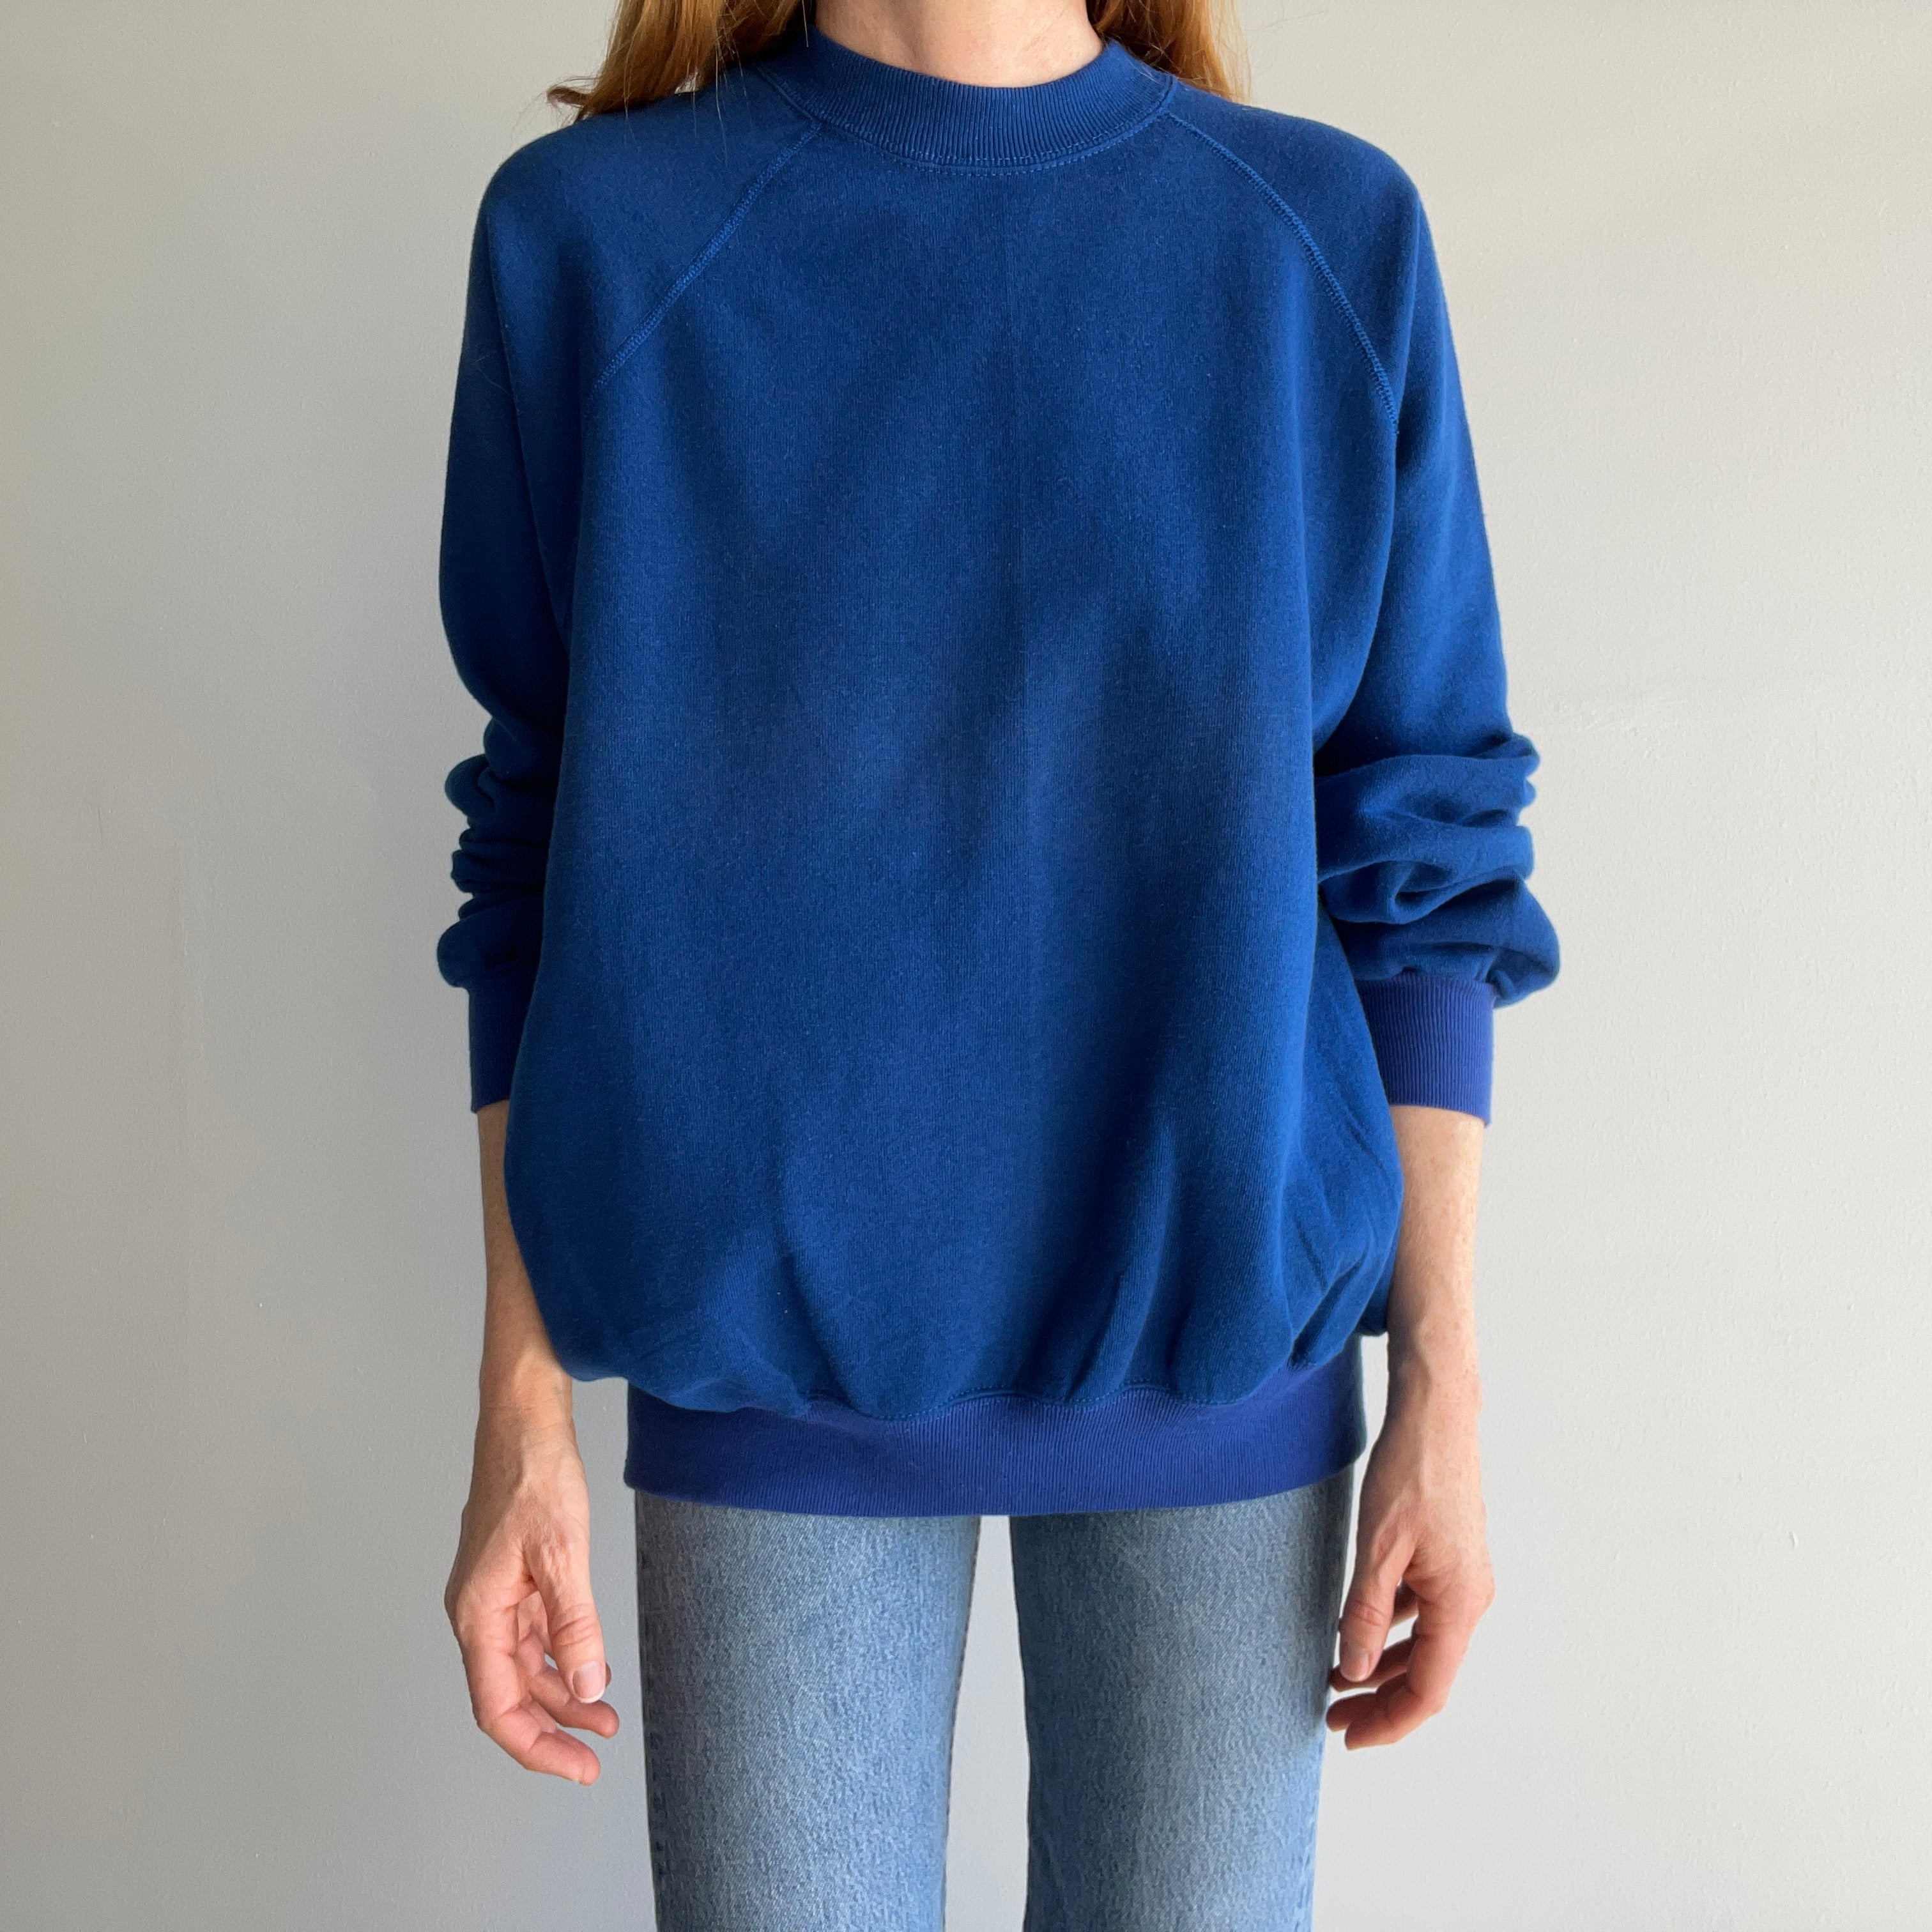 1980s Two Tone Blue (Yes, It is) Longer Sweatshirt by Bassett Walker